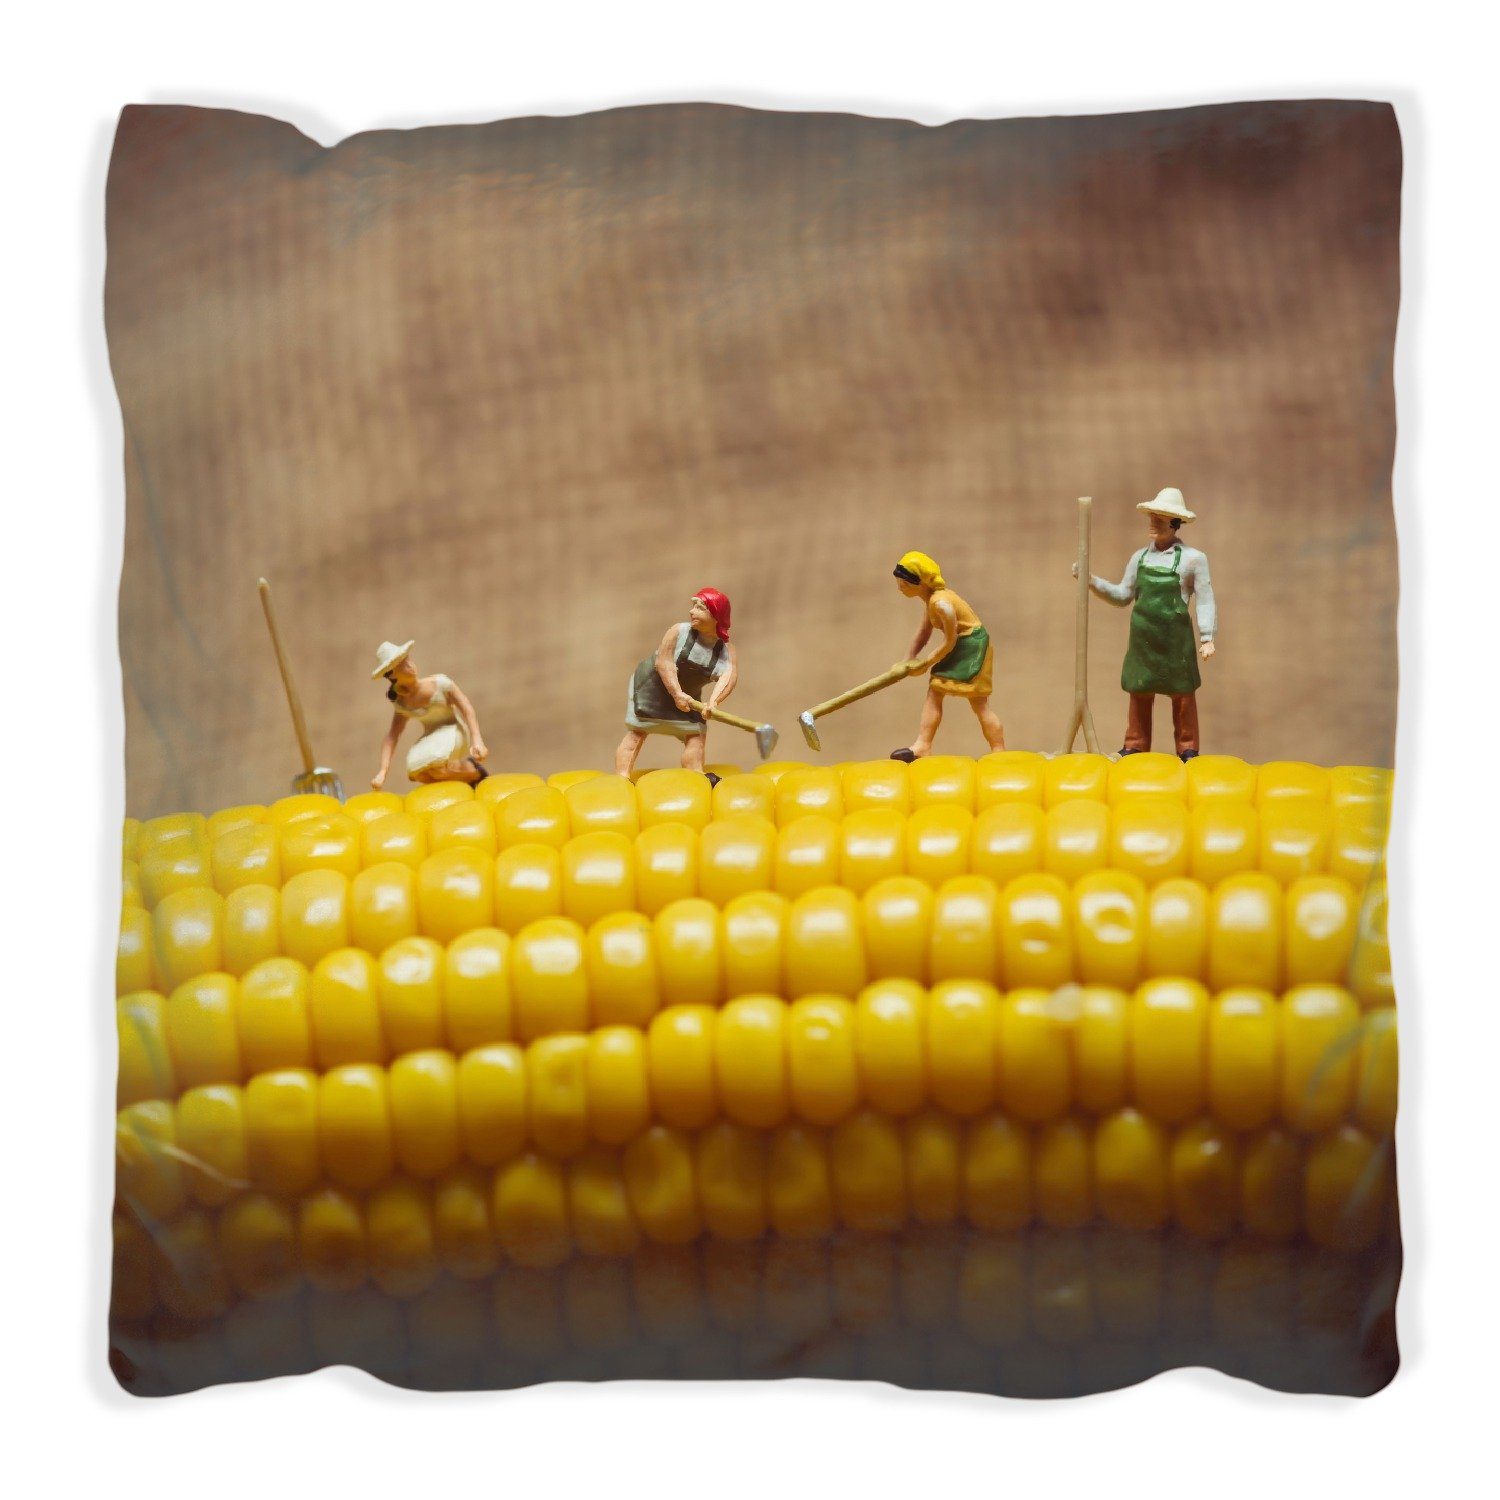 Wallario Dekokissen Lustige Bauernfiguren auf einem Maiskolben beim Arbeiten, handgenäht